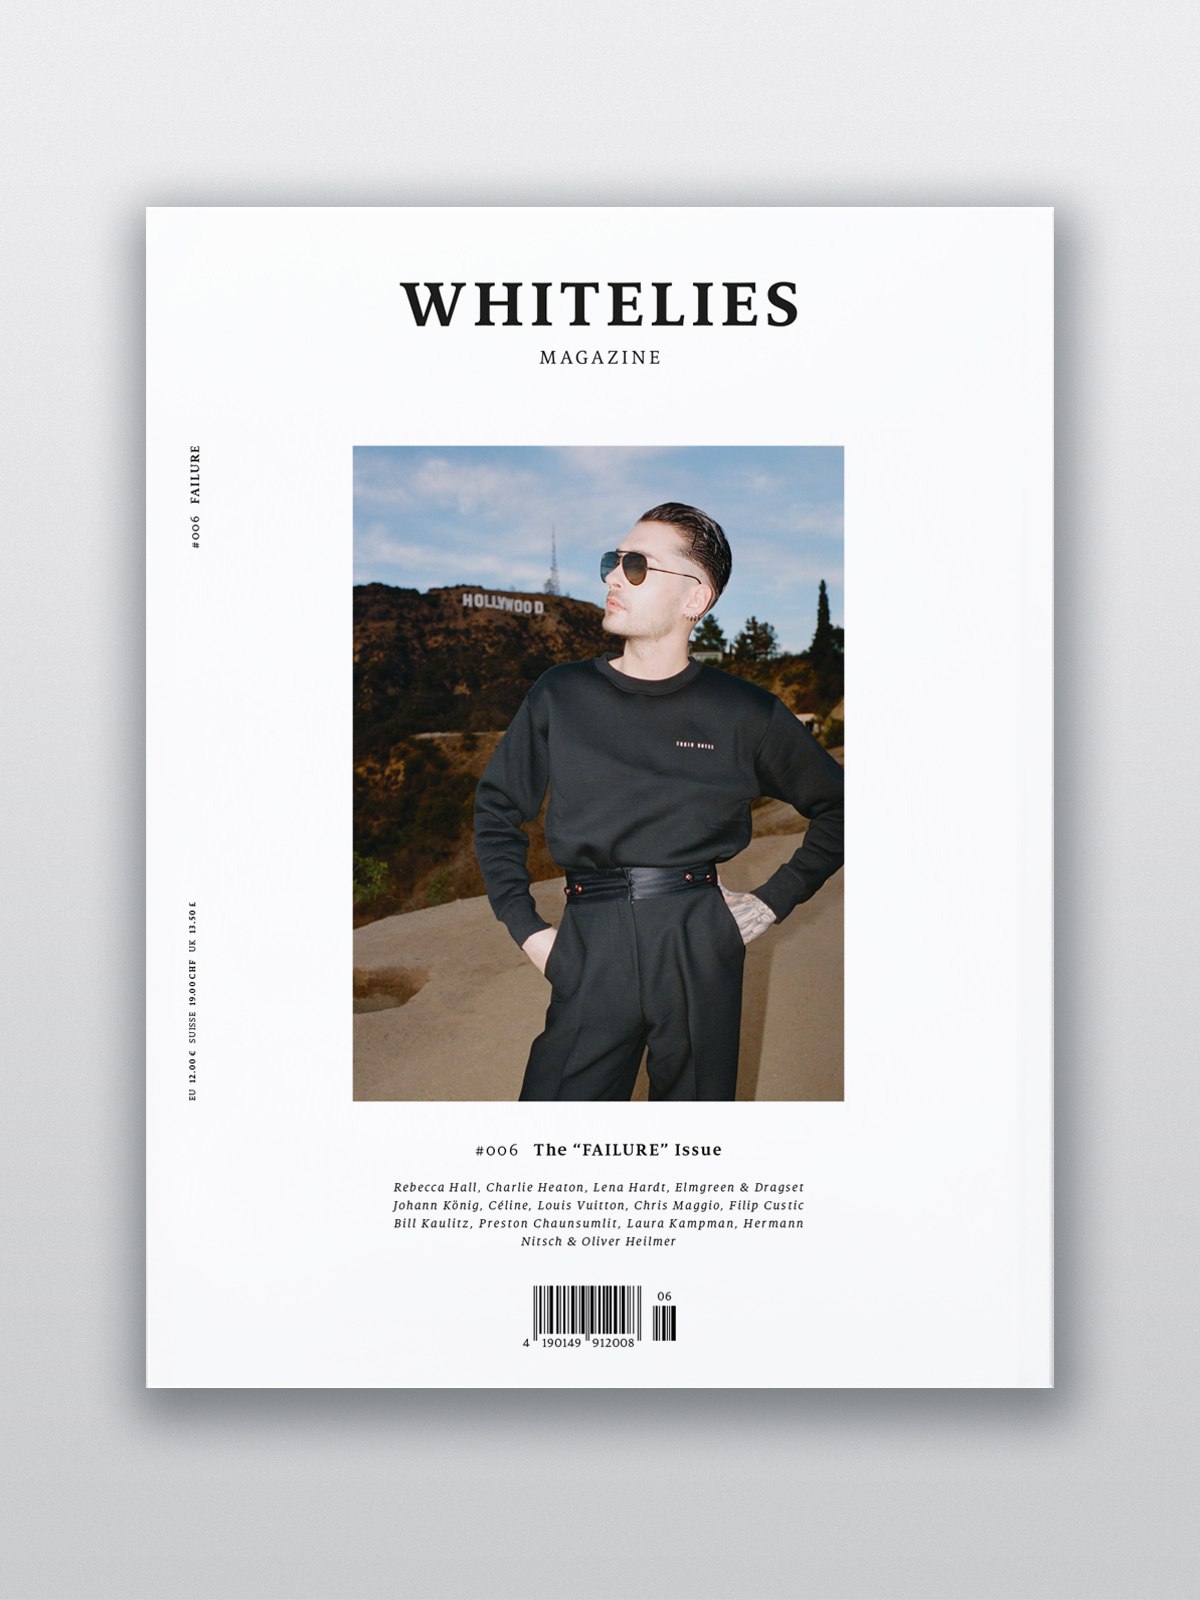 Whitelies magazine